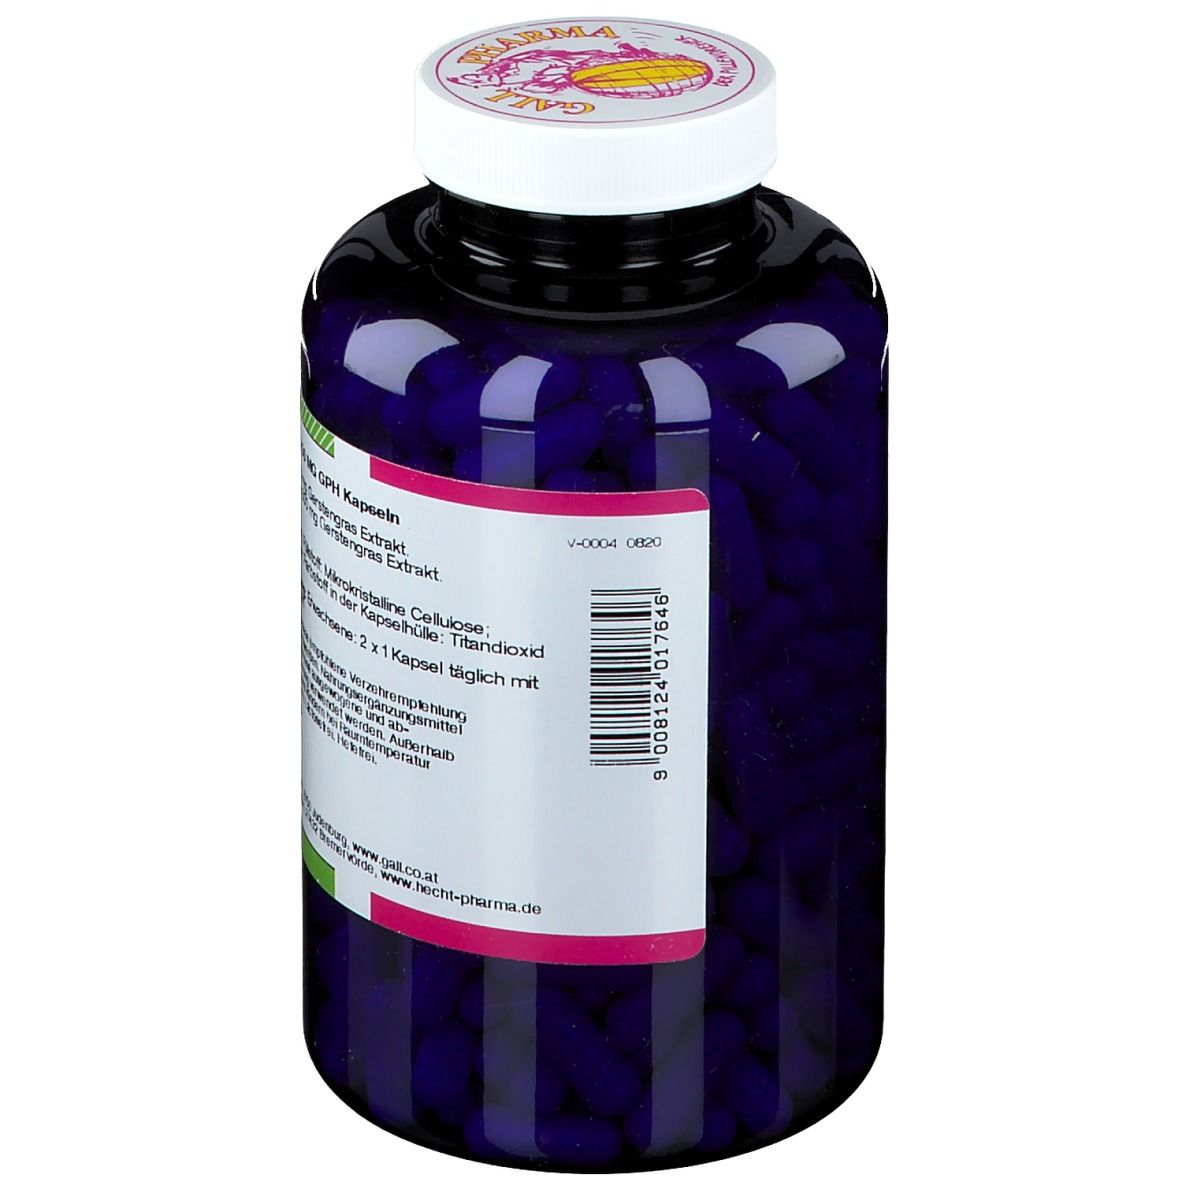 GALL PHARMA Gerstengras 250 mg GPH Kapseln